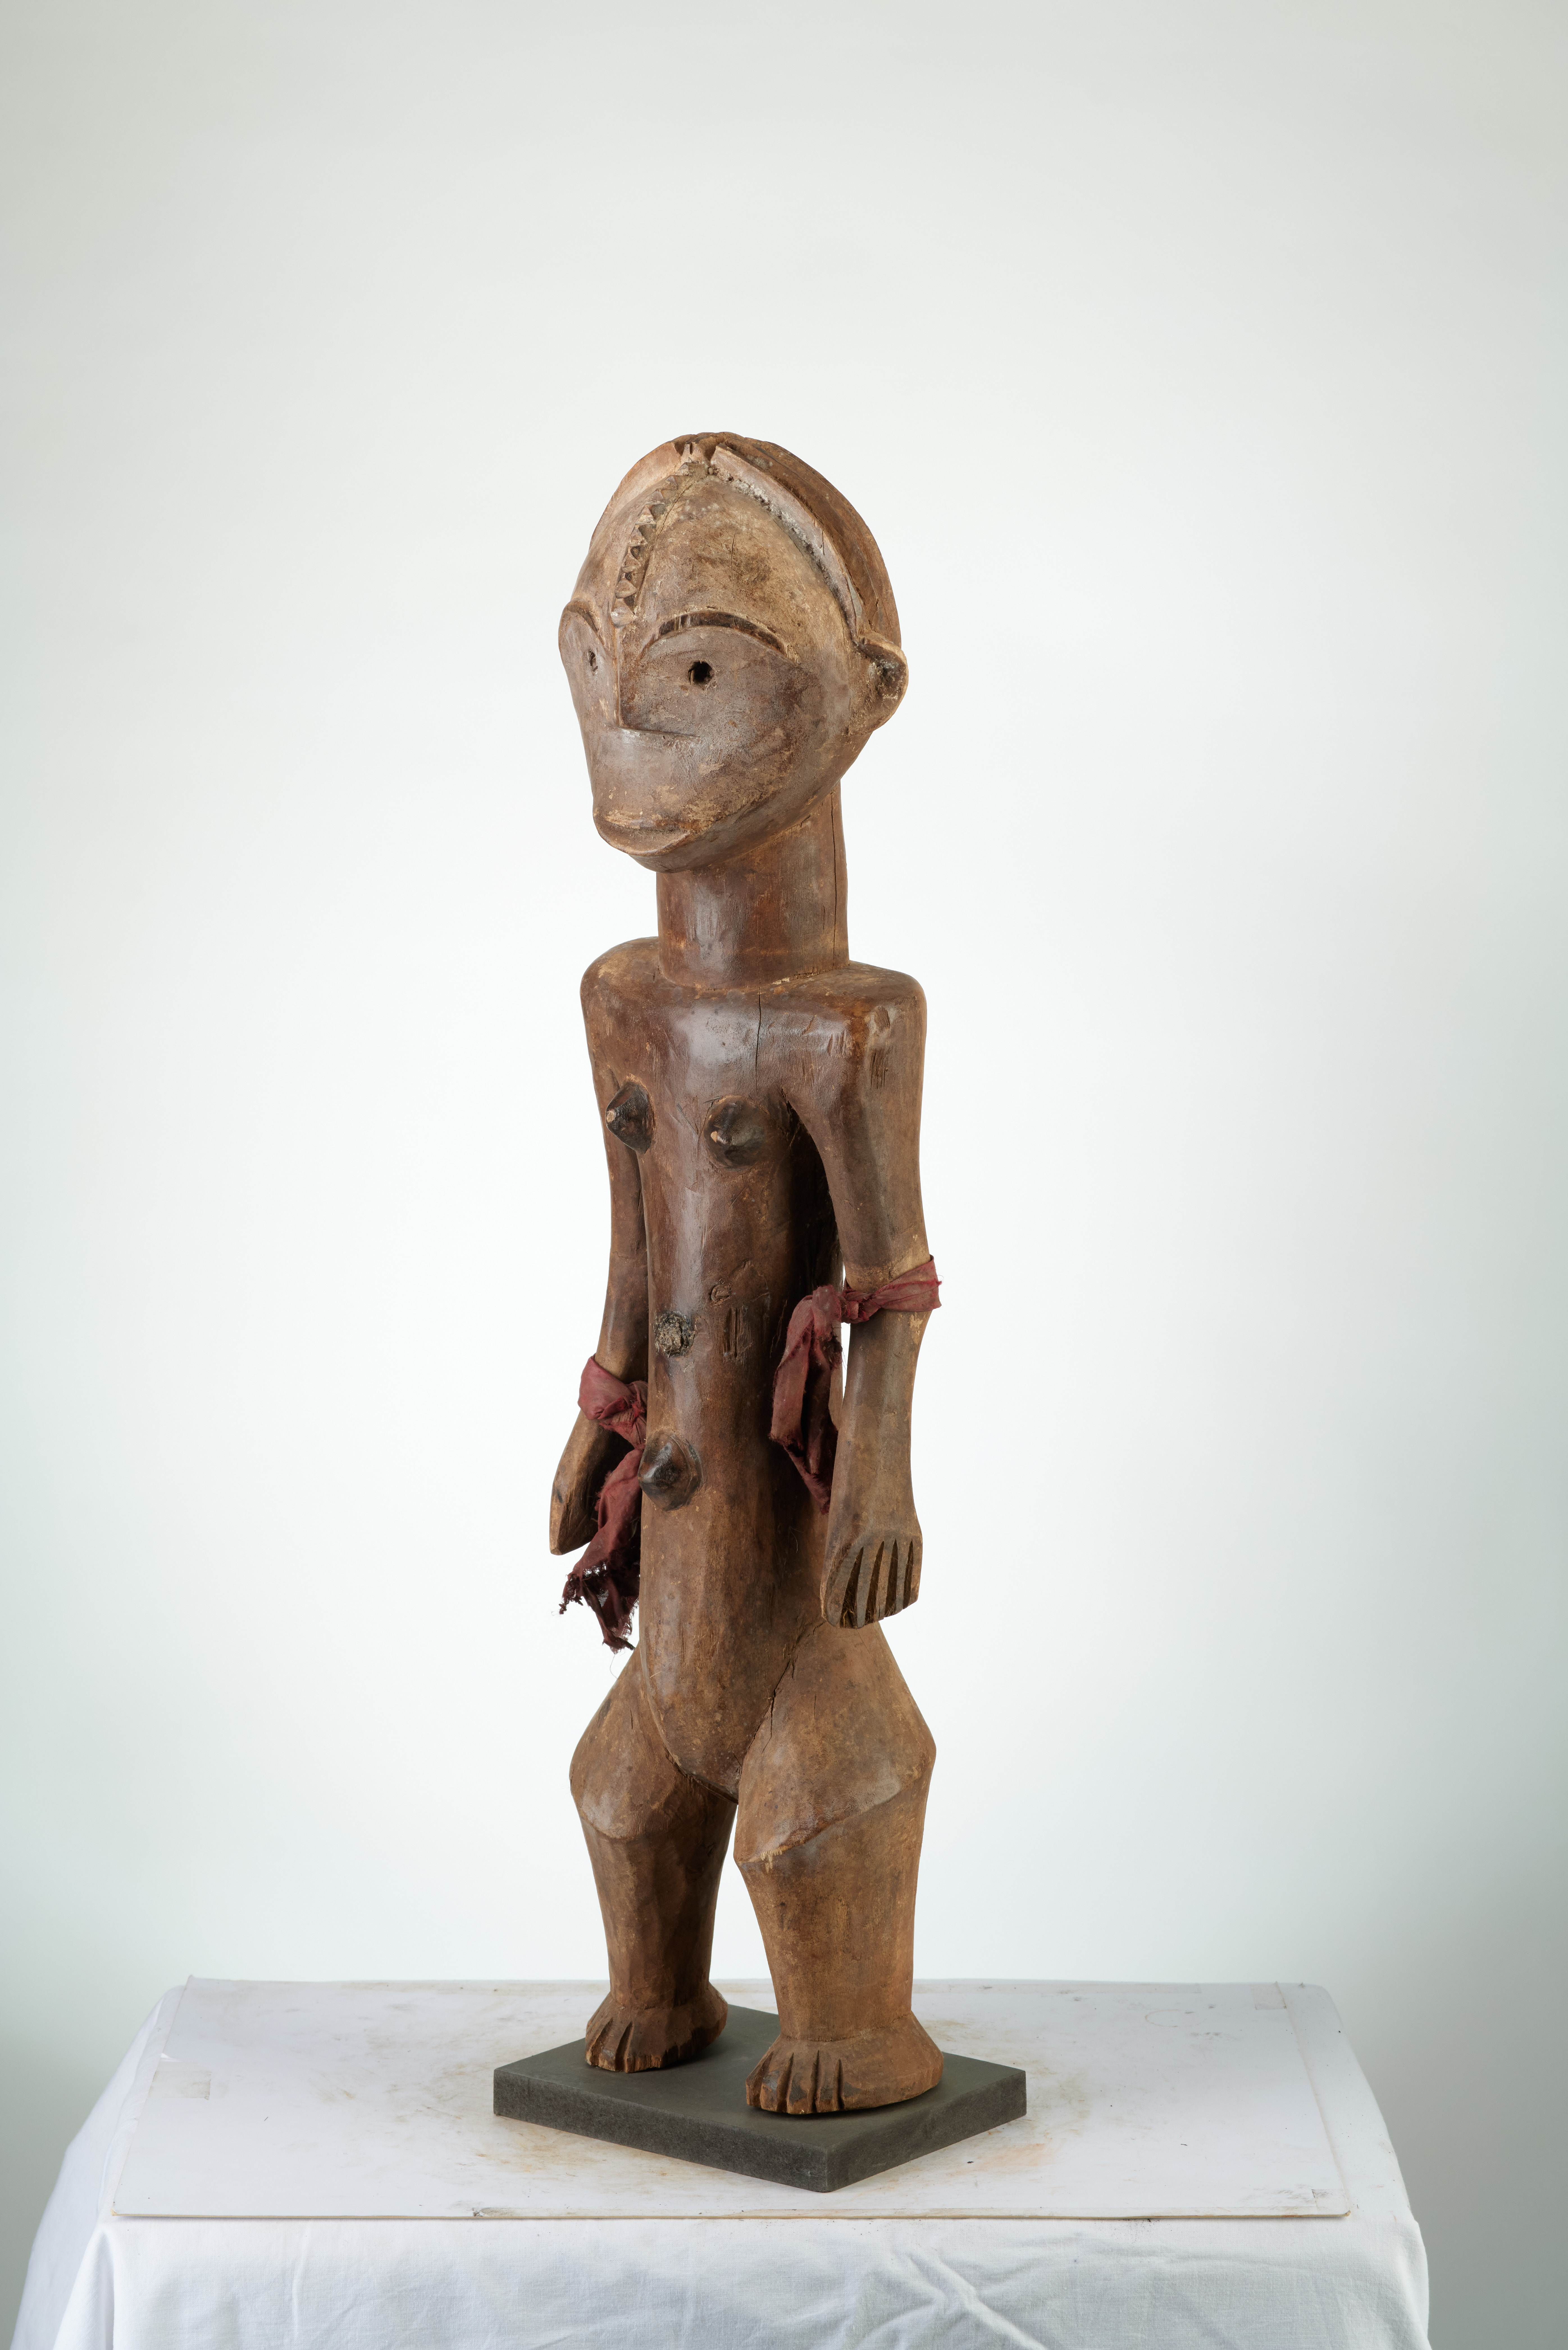 Mgbaka (statue), d`afrique : Rép.démoncratique du Congo., statuette Mgbaka (statue), masque ancien africain Mgbaka (statue), art du Rép.démoncratique du Congo. - Art Africain, collection privées Belgique. Statue africaine de la tribu des Mgbaka (statue), provenant du Rép.démoncratique du Congo., 1526/B83.cette sculpture représente probablement Nabo la soeur-épouse de Seto,héros mythologique,qui joue un rôle de premier plan dans la vie quotidienne des Ngbaka.du mariage incestueux de Seto et Nabo
naquit Ngambe H.67cm.bois ,fibres tissu rouge,caolin et tukula rouge.1ère moitié  du 20eme sc.(col.Minga Zaire 1964)

Voorouderbeeld Mgbaka,stelt waarschijnlijk Nabo voor de zuster en vrouw van Seto,die een grote invloed heeft op de Mgbaka. H.67cm.hout,rood gekleurd met Tekula.rode stoffen.(col.Minga Zaire 1964.). art,culture,masque,statue,statuette,pot,ivoire,exposition,expo,masque original,masques,statues,statuettes,pots,expositions,expo,masques originaux,collectionneur d`art,art africain,culture africaine,masque africain,statue africaine,statuette africaine,pot africain,ivoire africain,exposition africain,expo africain,masque origina africainl,masques africains,statues africaines,statuettes africaines,pots africains,expositions africaines,expo africaines,masques originaux  africains,collectionneur d`art africain